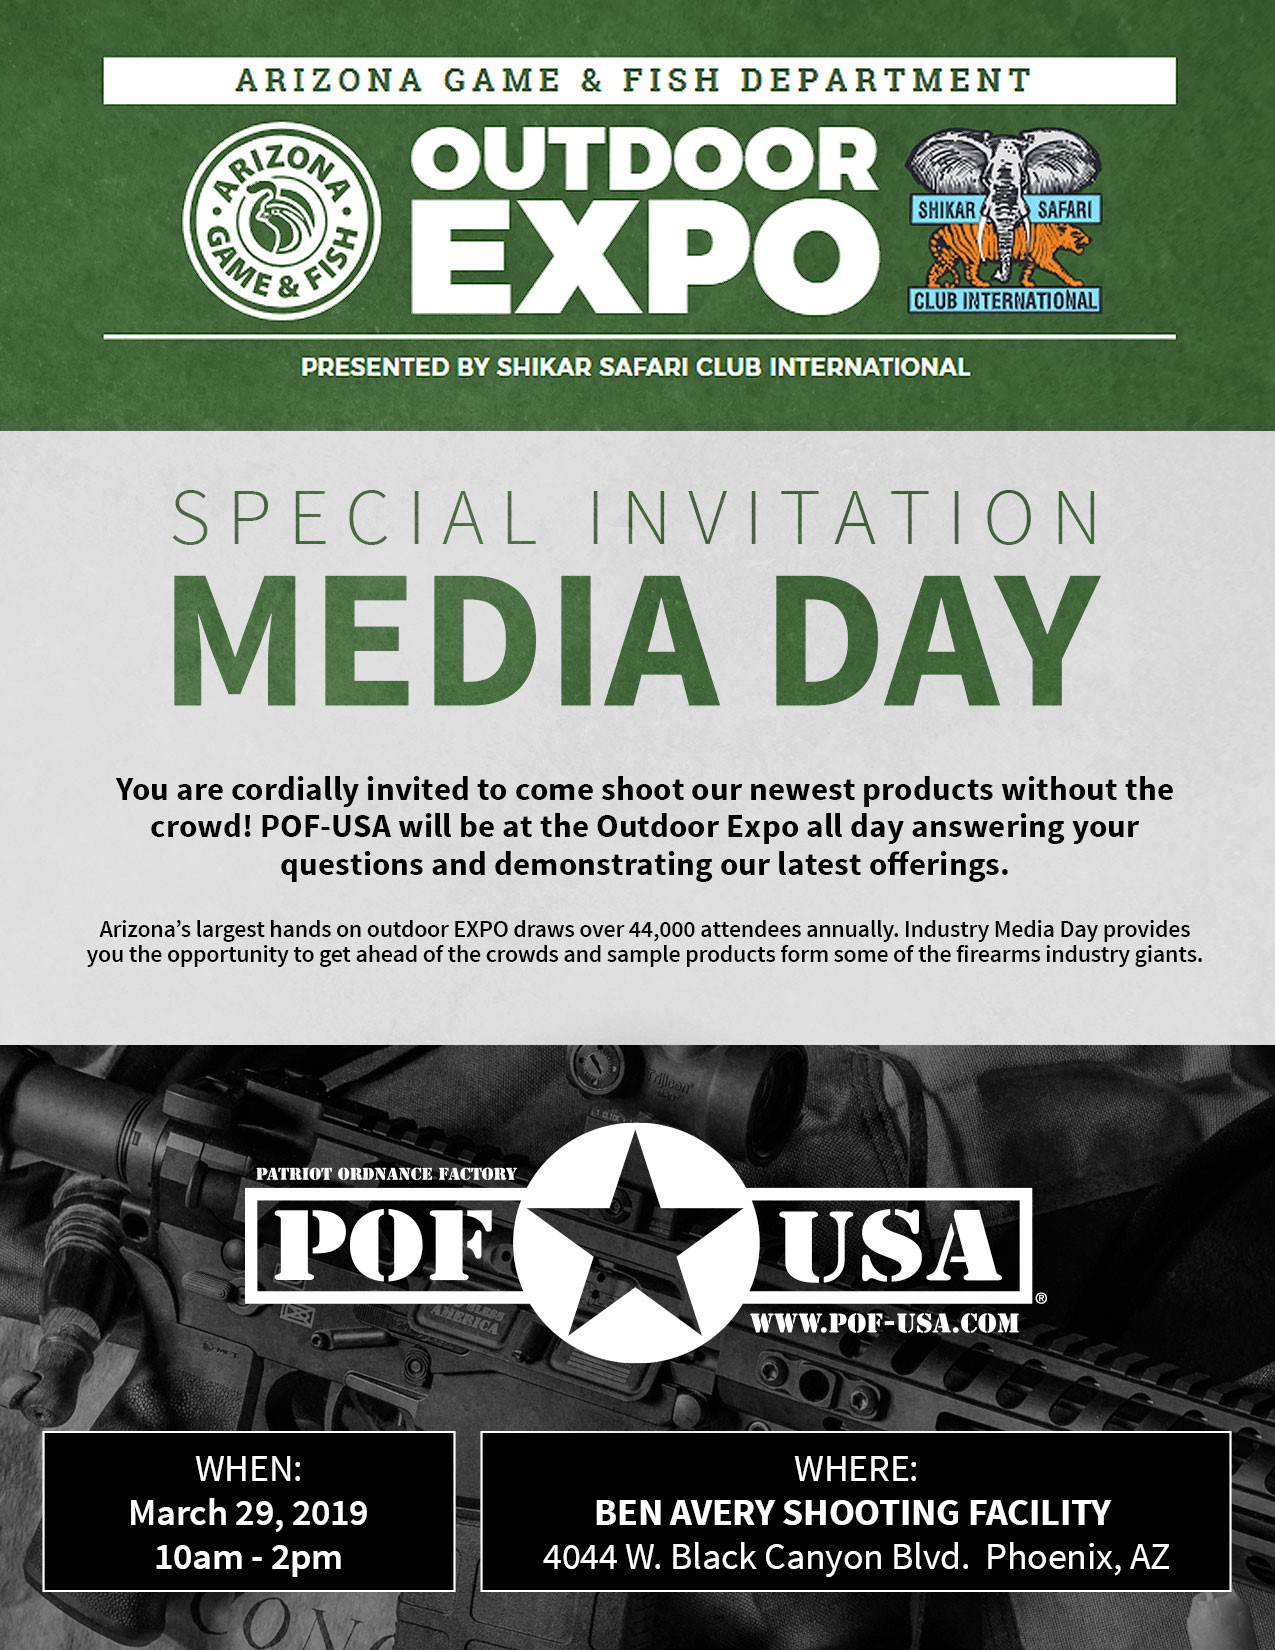 POF USA / AZ Game and Fish Expo Media / Industry Day Invitation